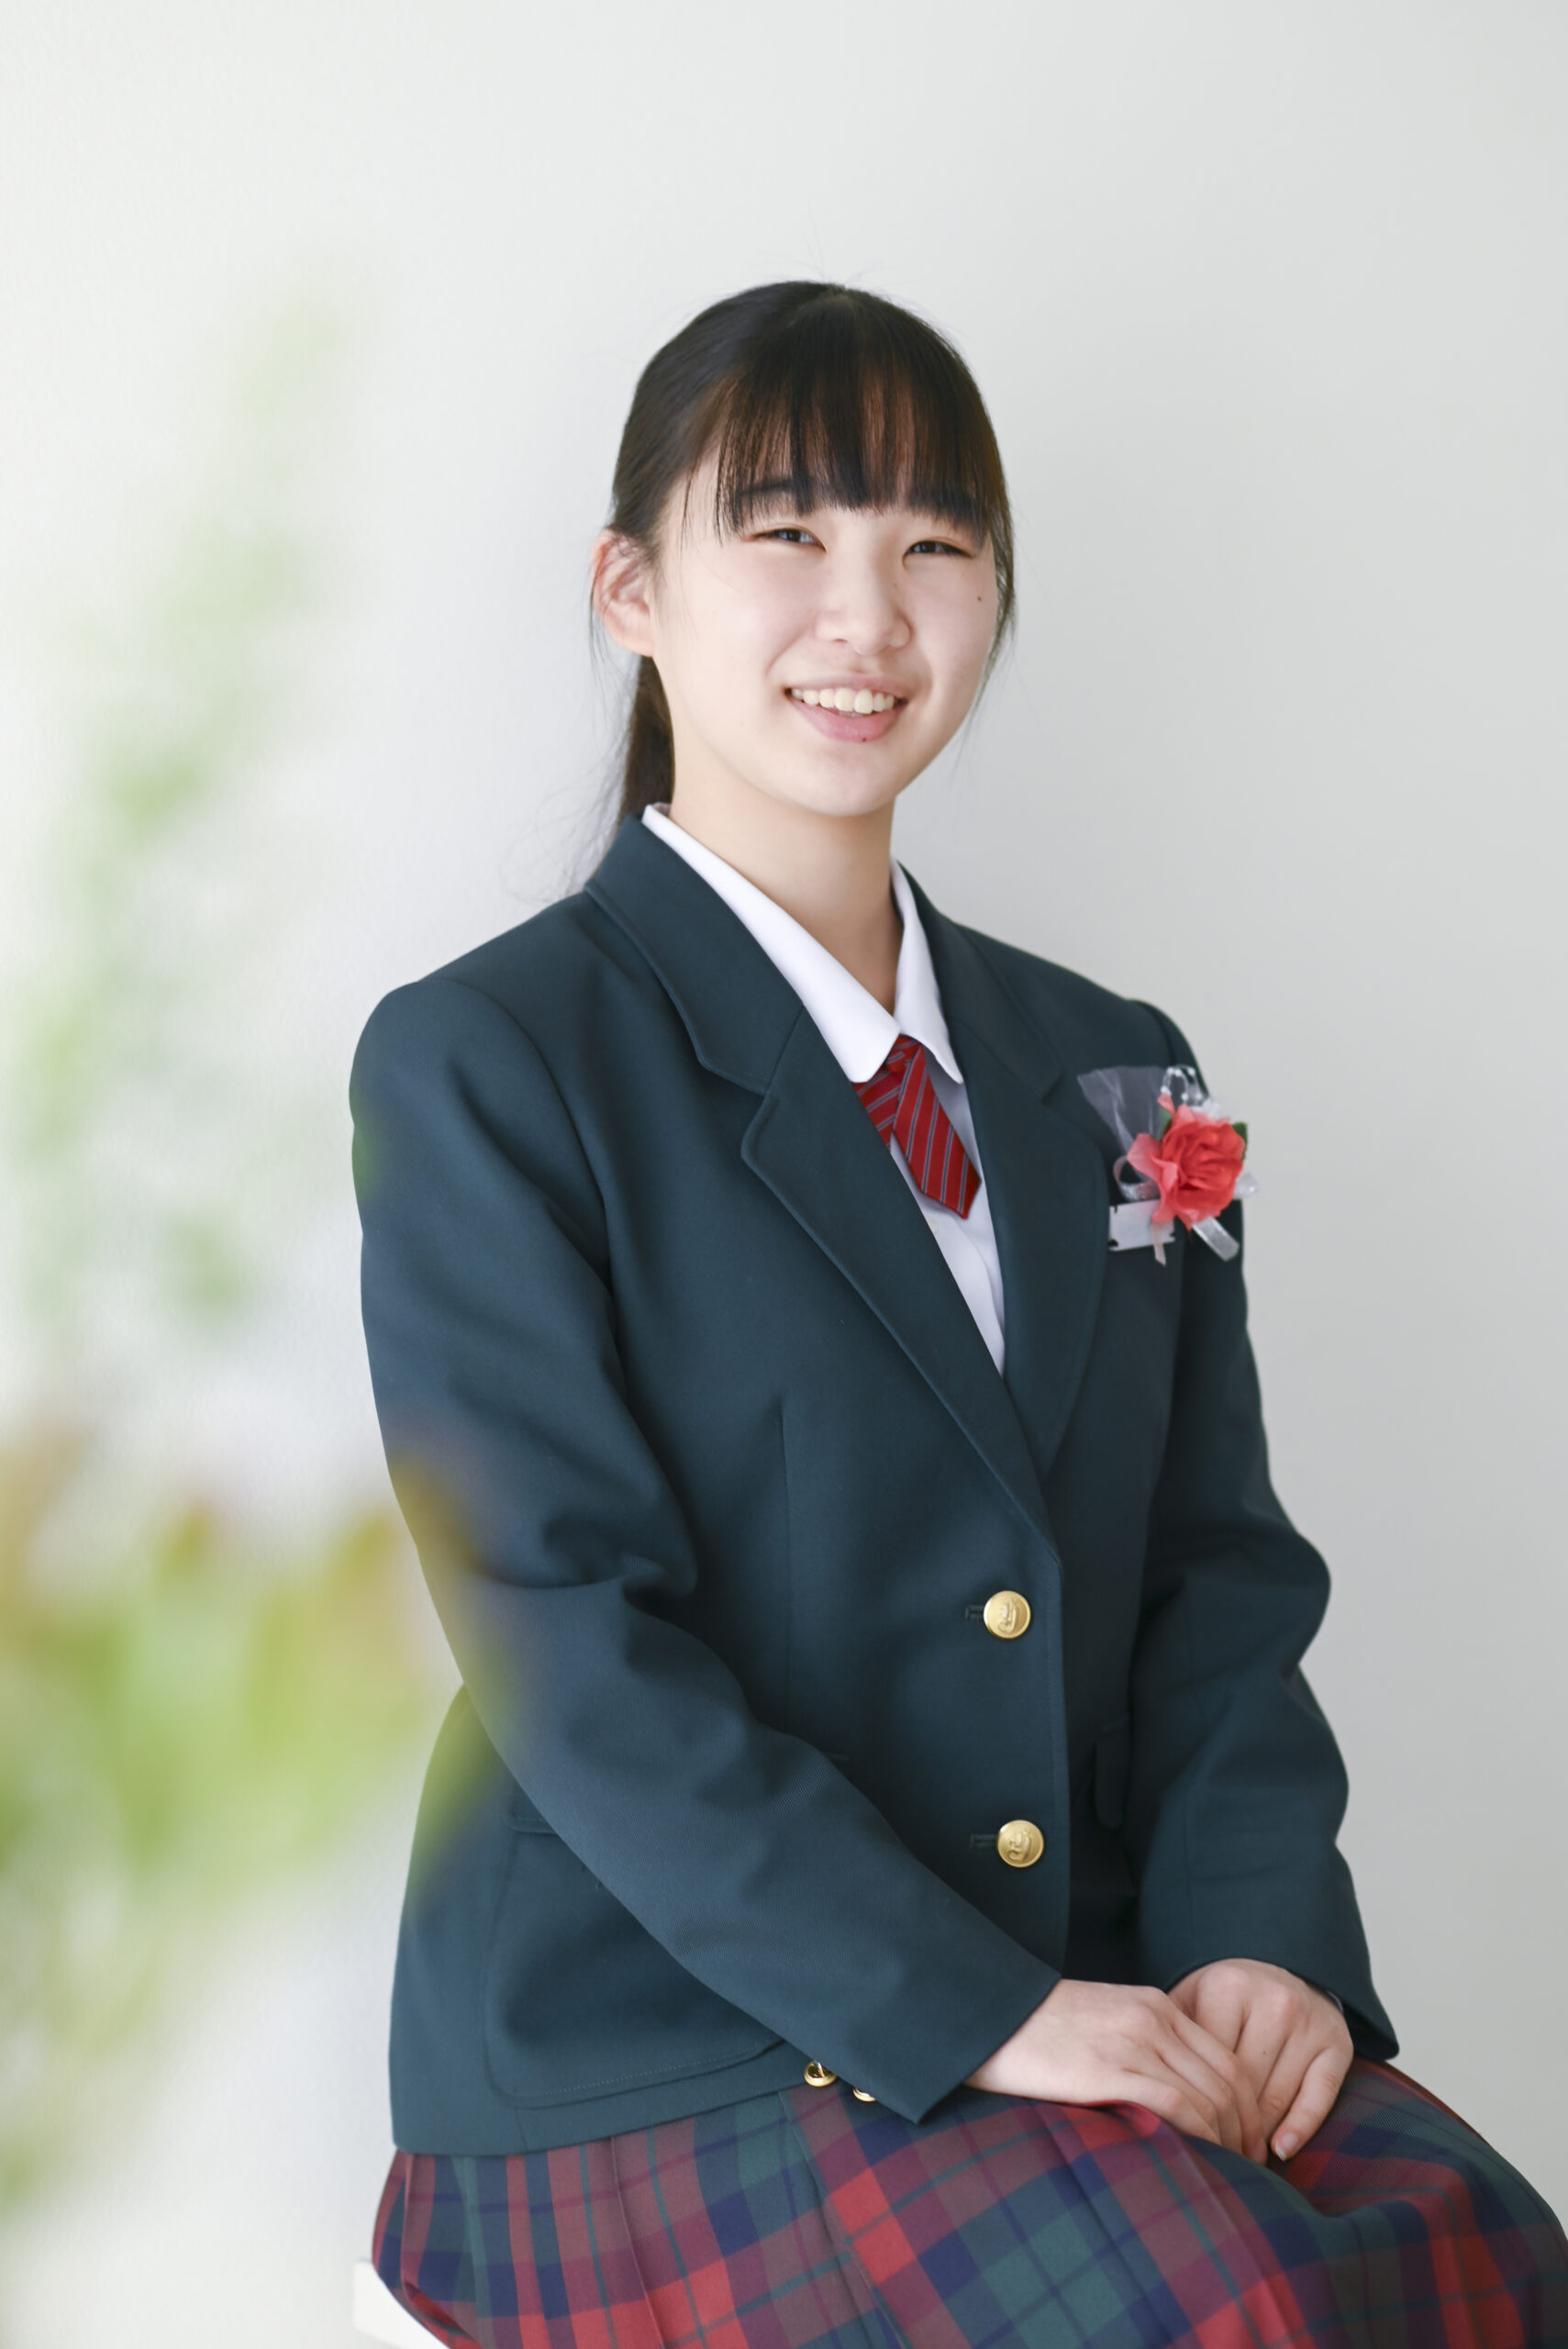 中学校卒業の女の子　制服姿で記念写真